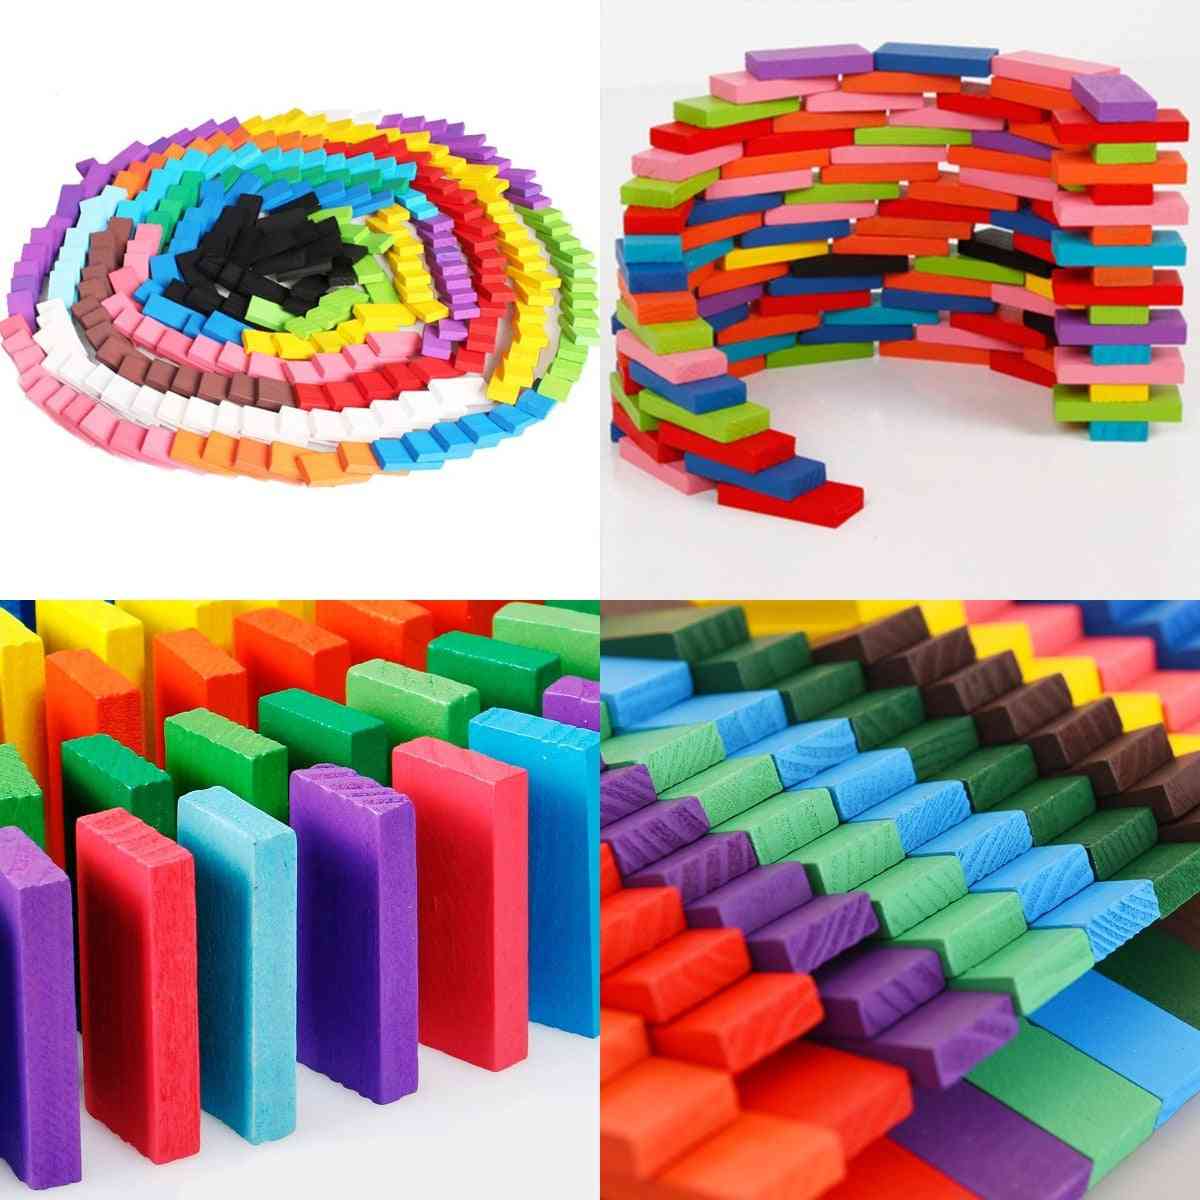 120 unidades / conjunto de blocos de dominó de madeira arco-íris, brinquedos quebra-cabeças para brinquedos educativos para crianças - 1 peça auxiliar de dominó